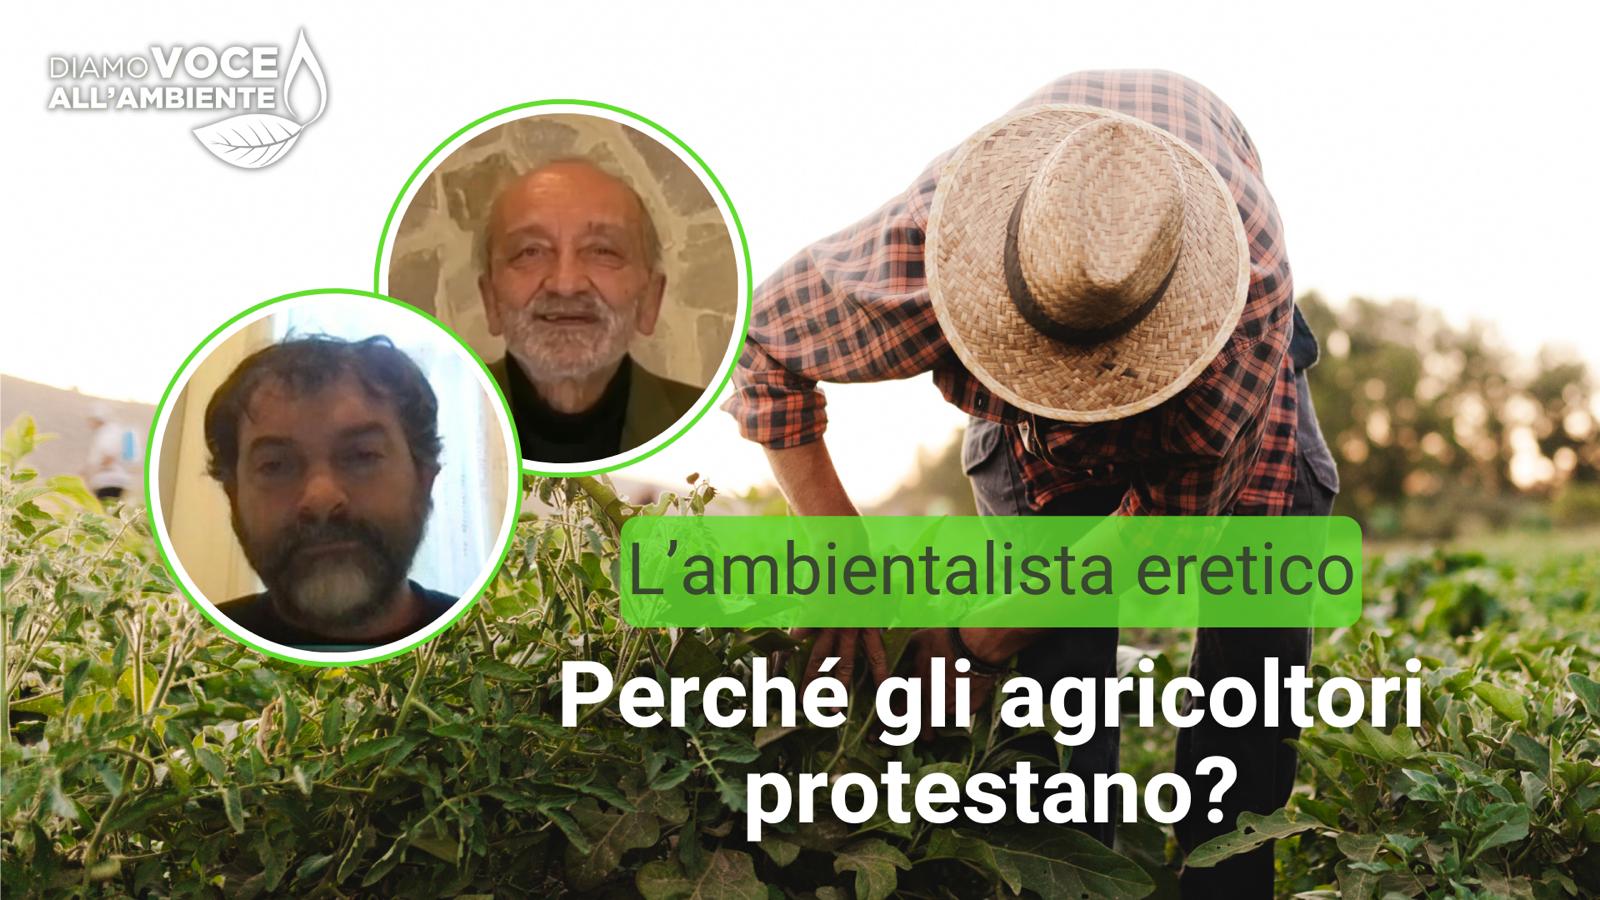 Perchè gli agricoltori protestano?